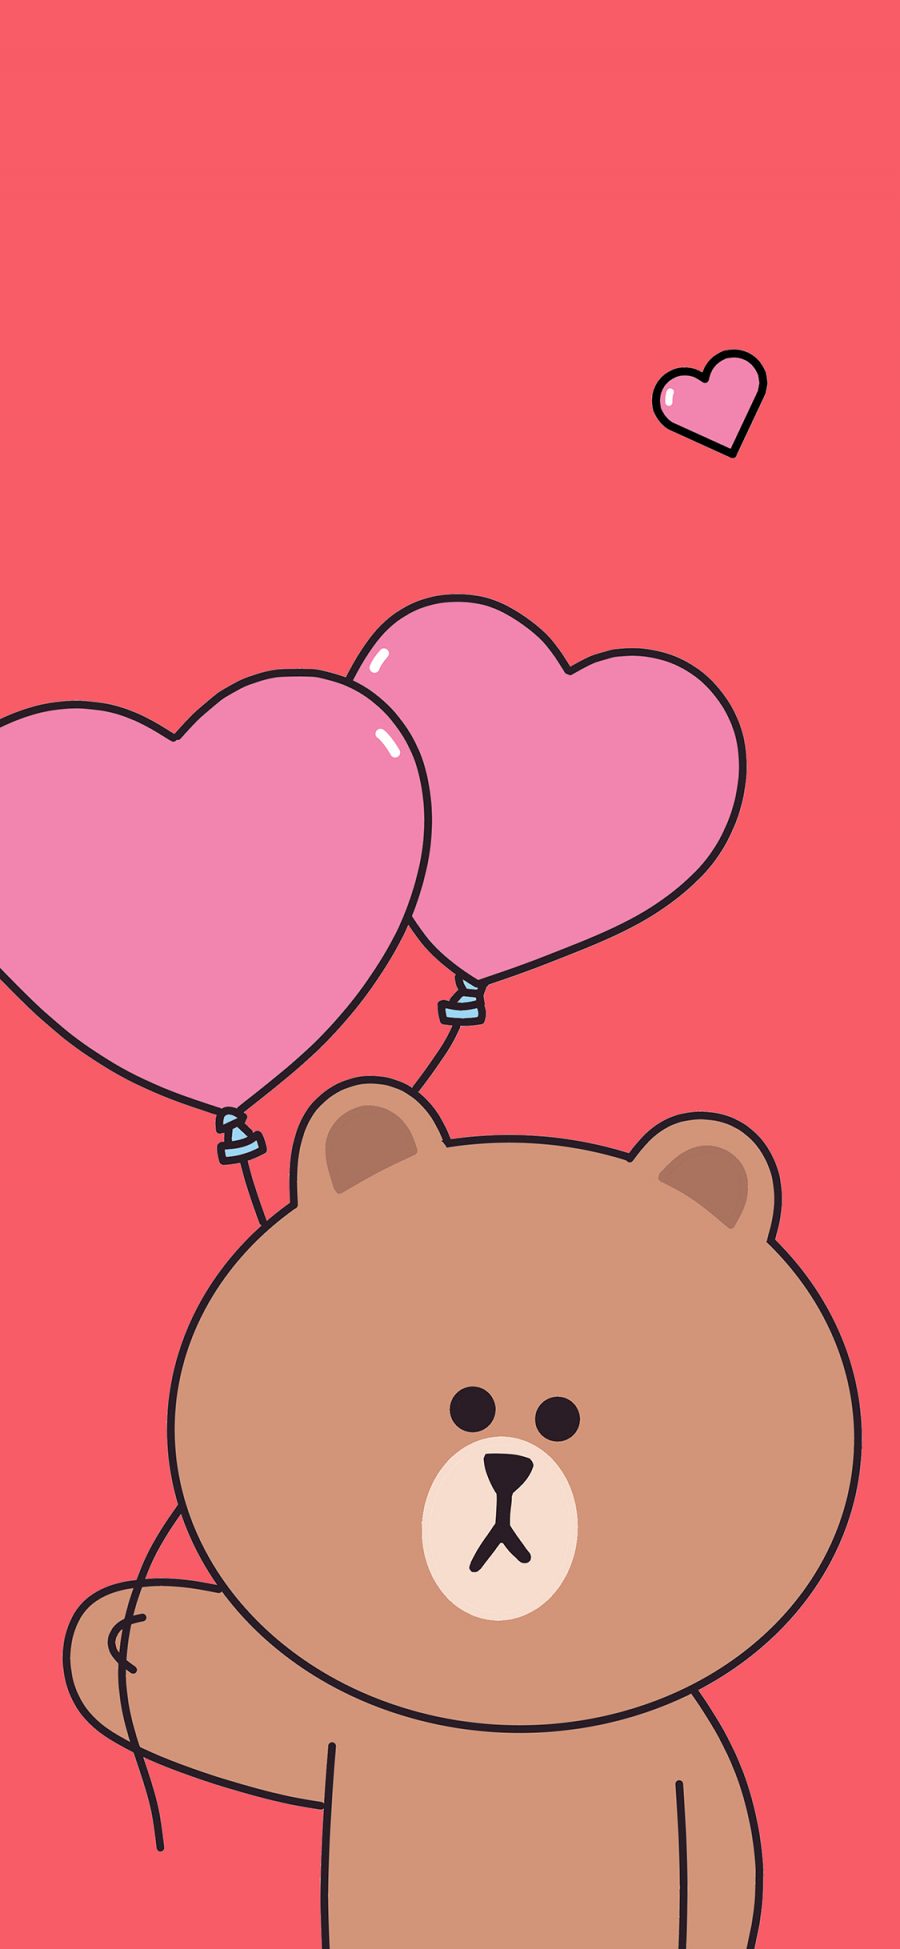 [2436×1125]布朗熊 linefriends 爱心 气球 蓝色 苹果手机动漫壁纸图片